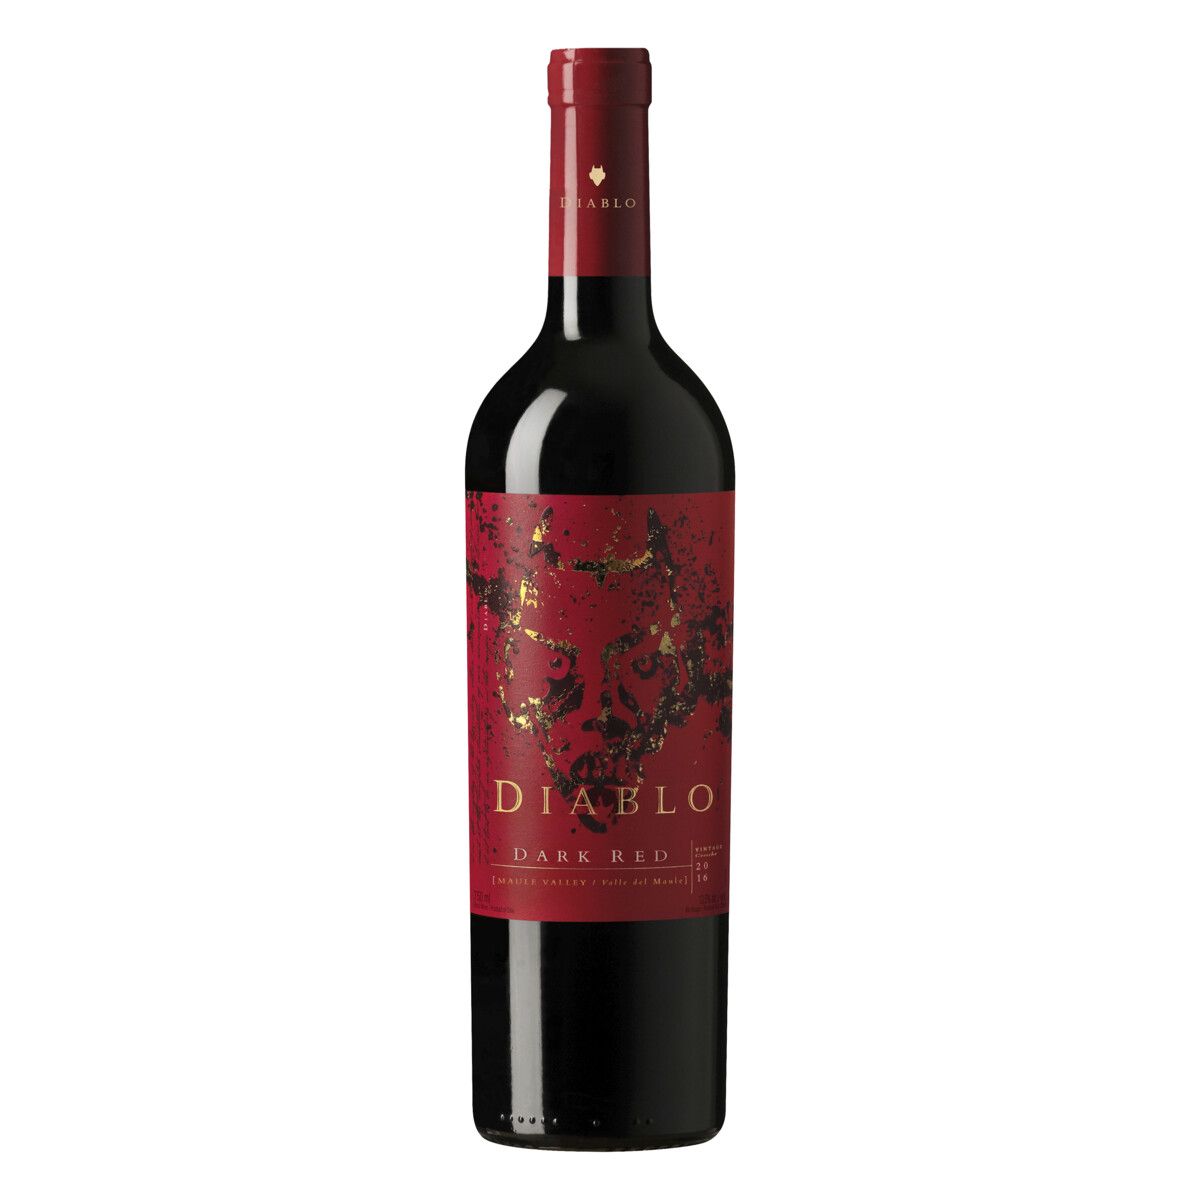 Vinho Chileno Tinto Meio Seco Dark Red Diablo Valle del Maule Garrafa 750ml